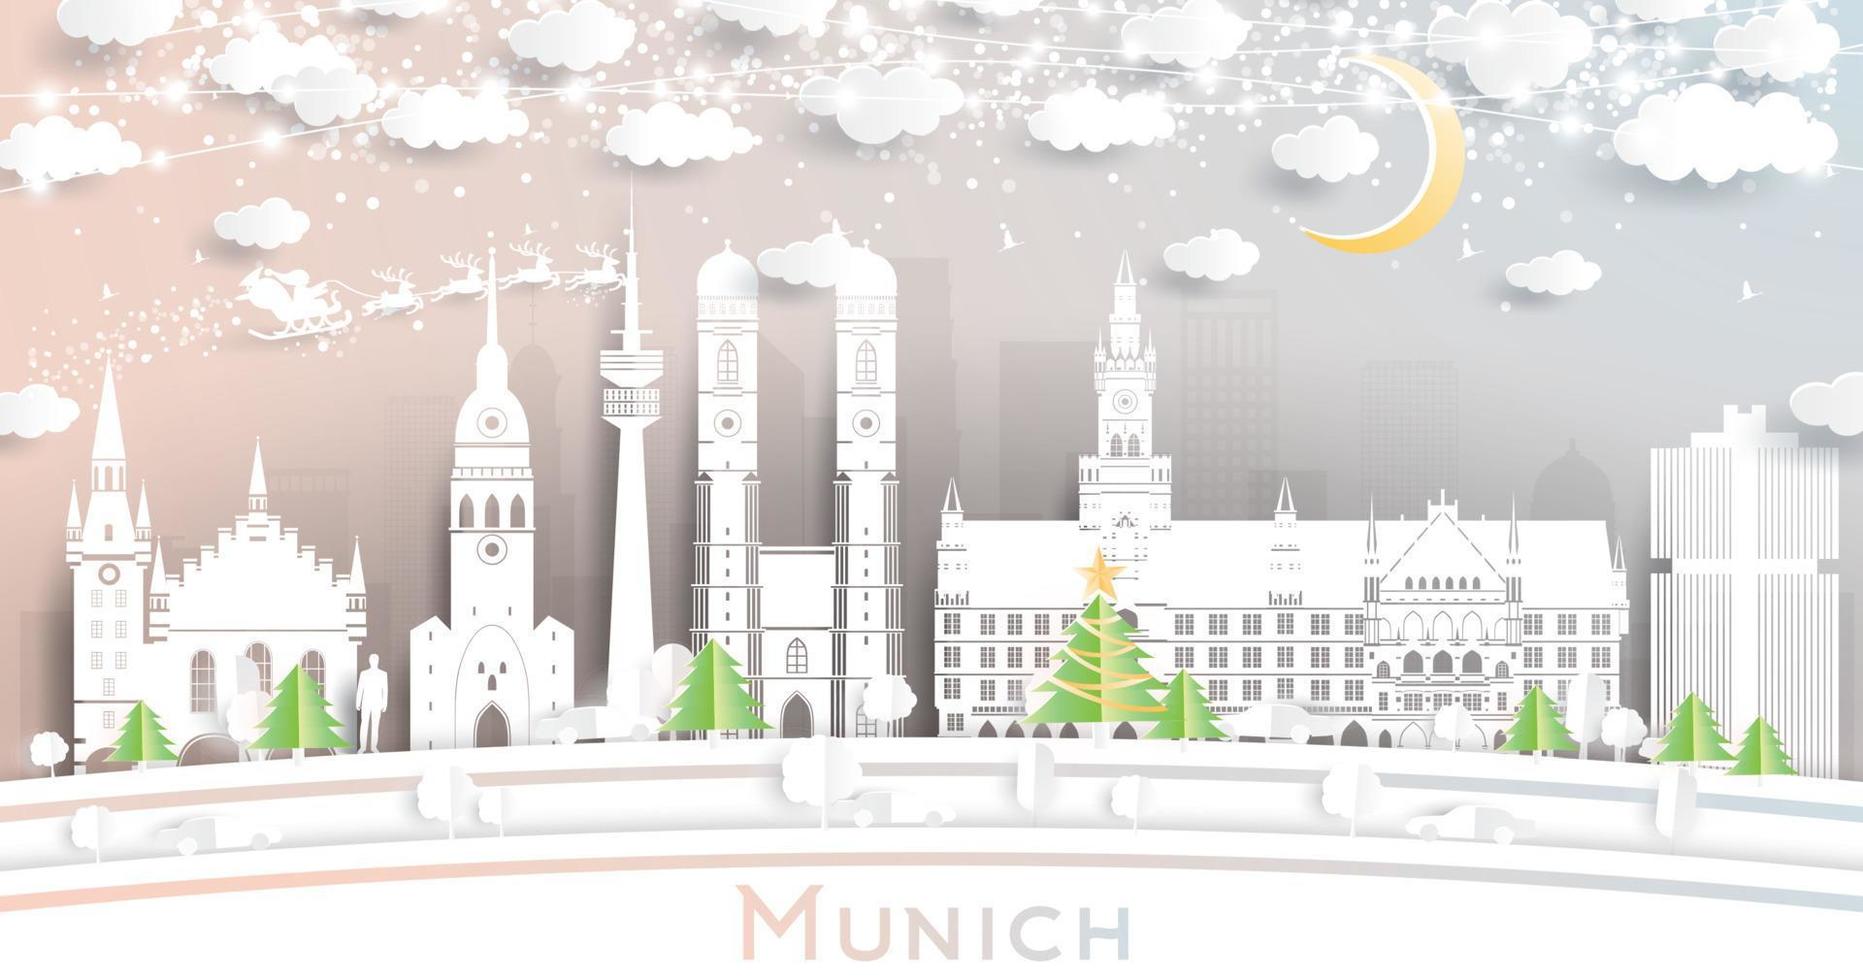 München Duitsland stad horizon in papier besnoeiing stijl met sneeuwvlokken, maan en neon guirlande. vector